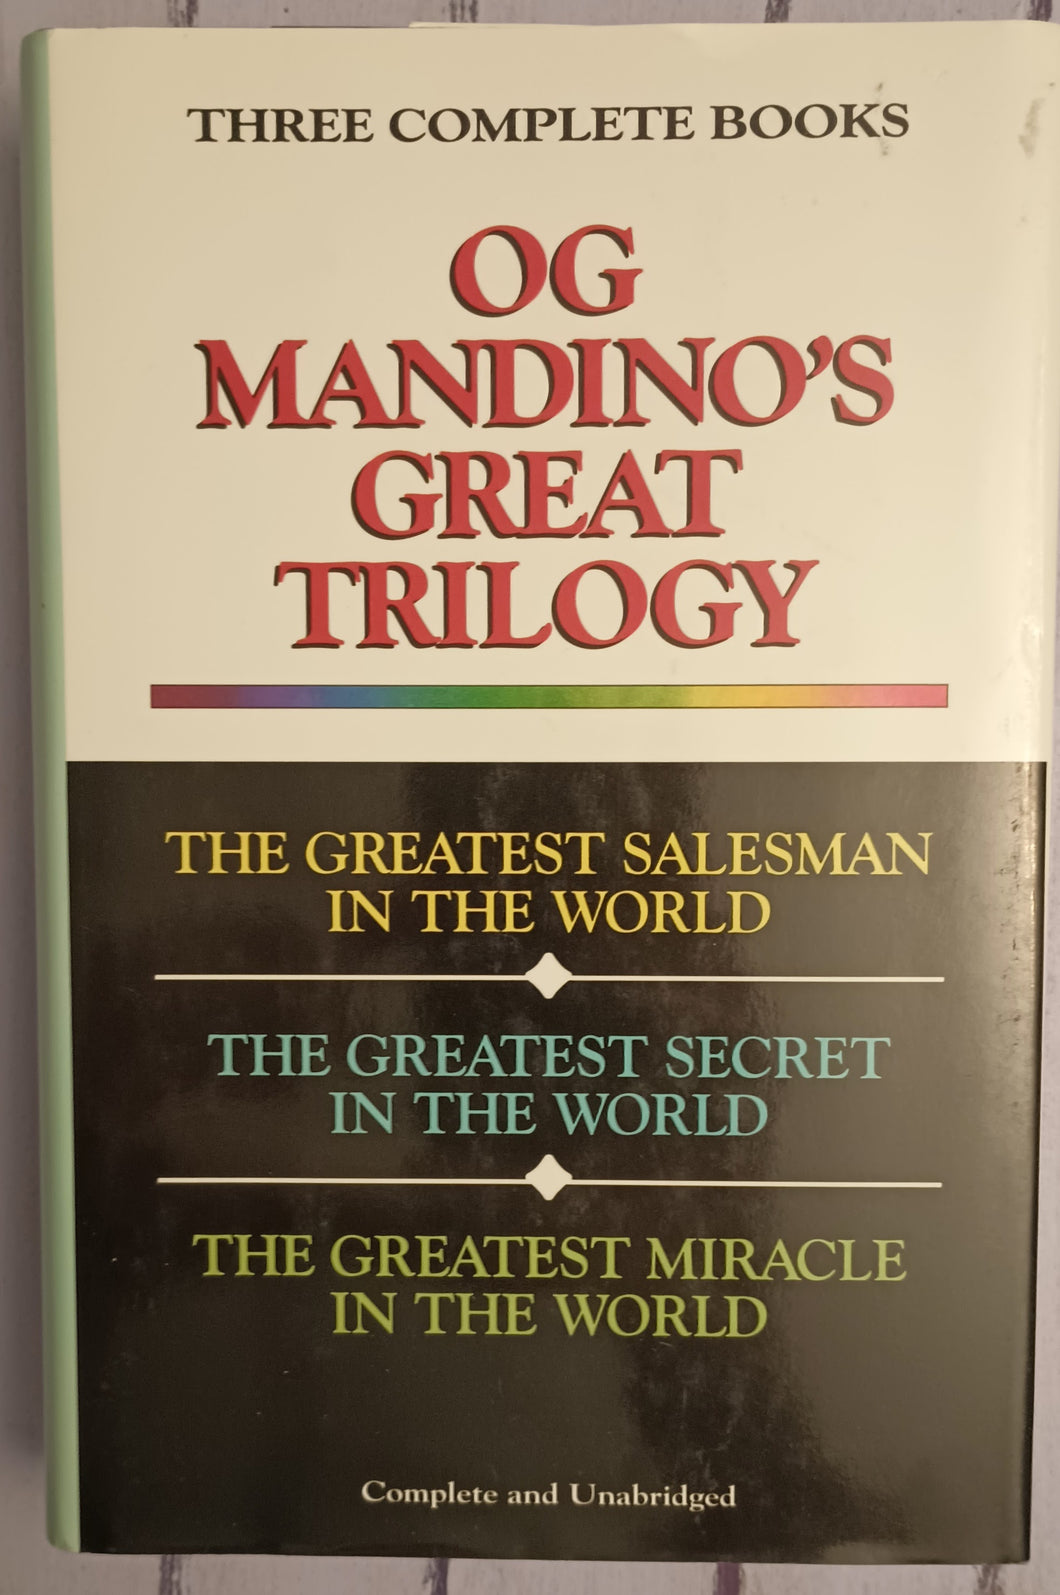 OG Mandino’s Great Trilogy